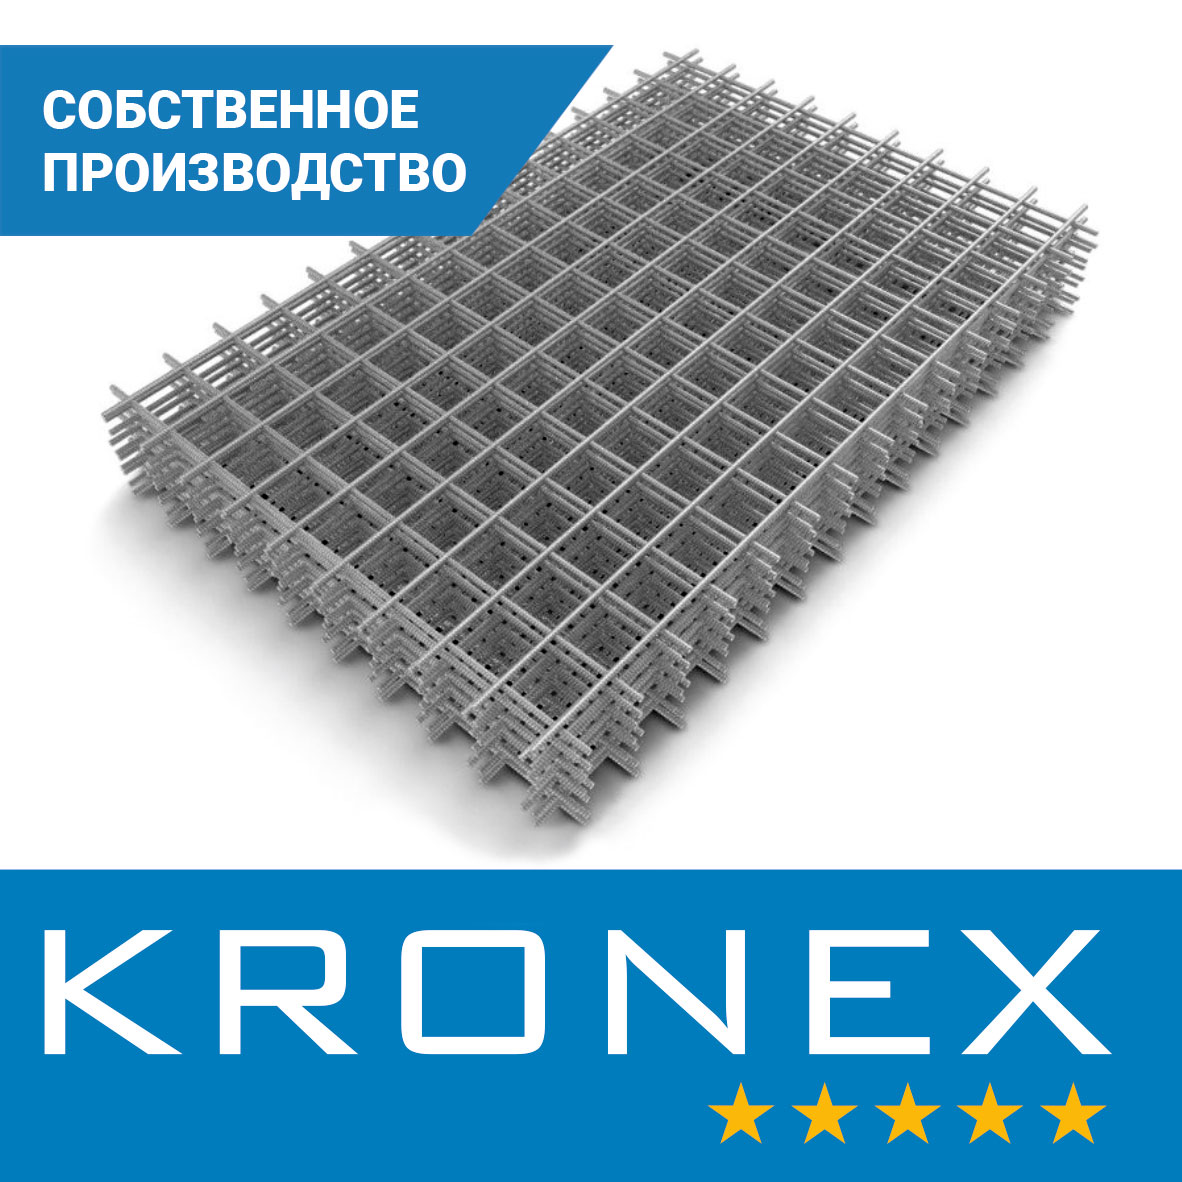 Сетка сварная KRONEX 50/50/5 (карта 2×0,25 м), исп. по ГОСТ 23279-2012, S500